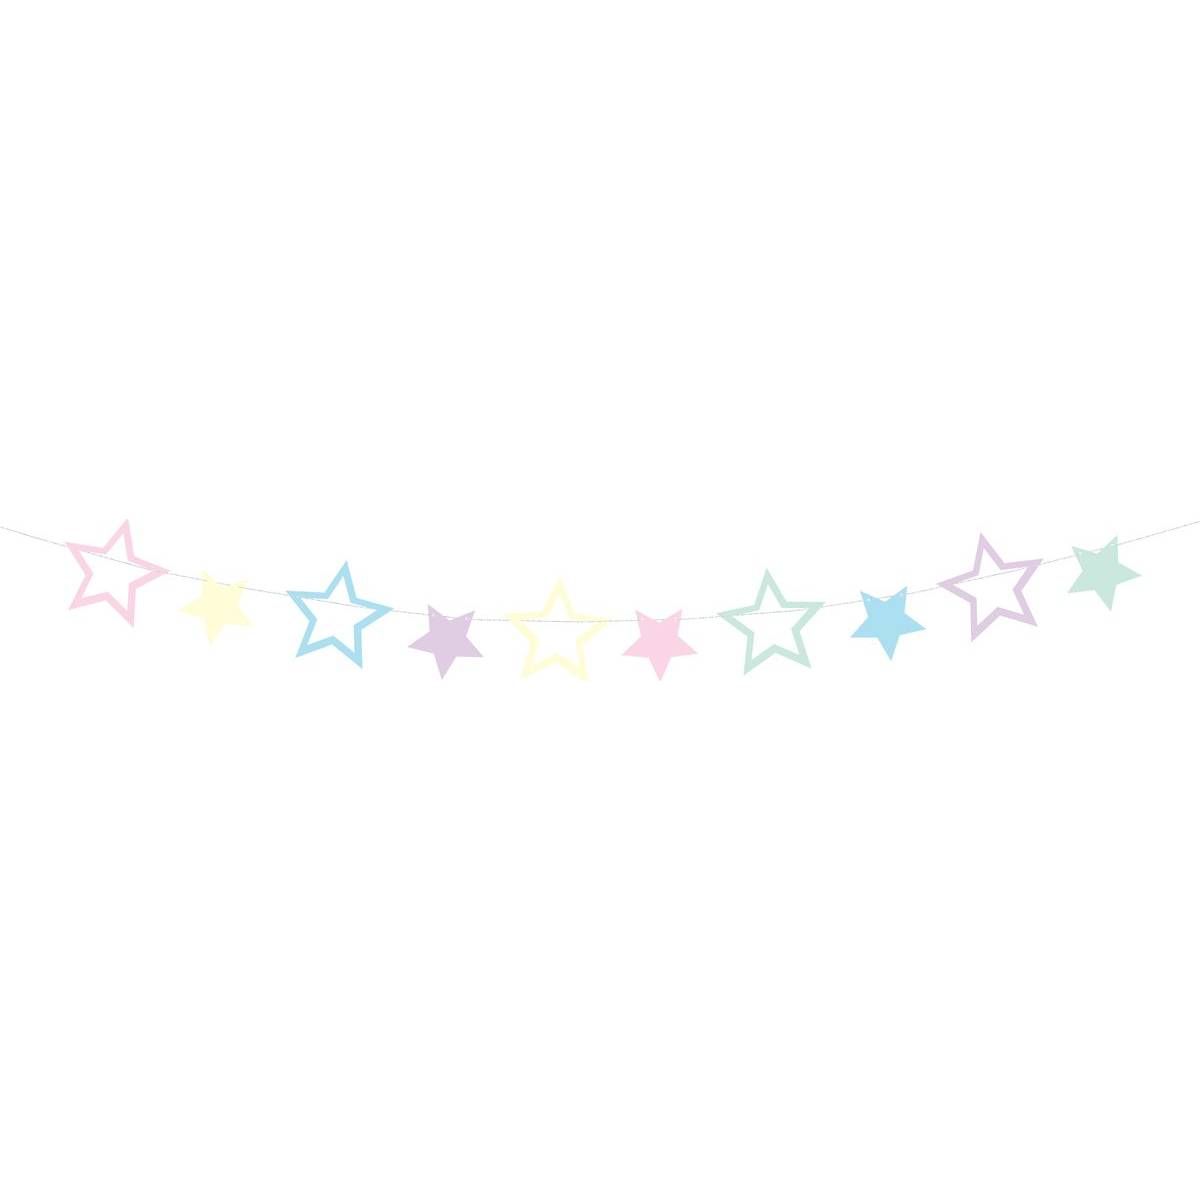 Girlanda hvězdy 2m 10 hvězd - PartyDeco